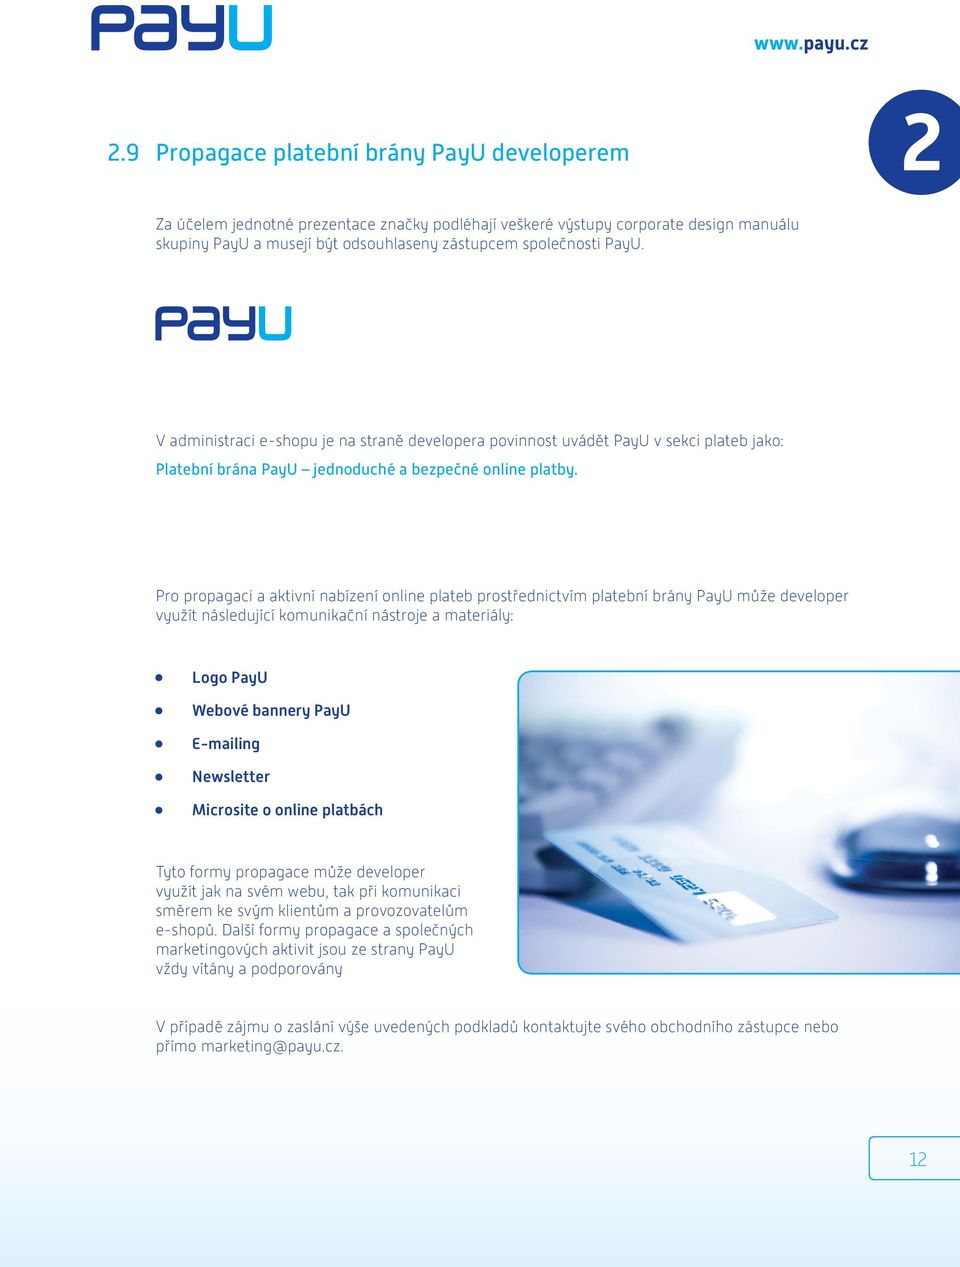 Pro propagaci a aktivní nabízení online plateb prostřednictvím platební brány PayU může developer využít následující komunikační nástroje a materiály: Logo PayU Webové bannery PayU E-mailing